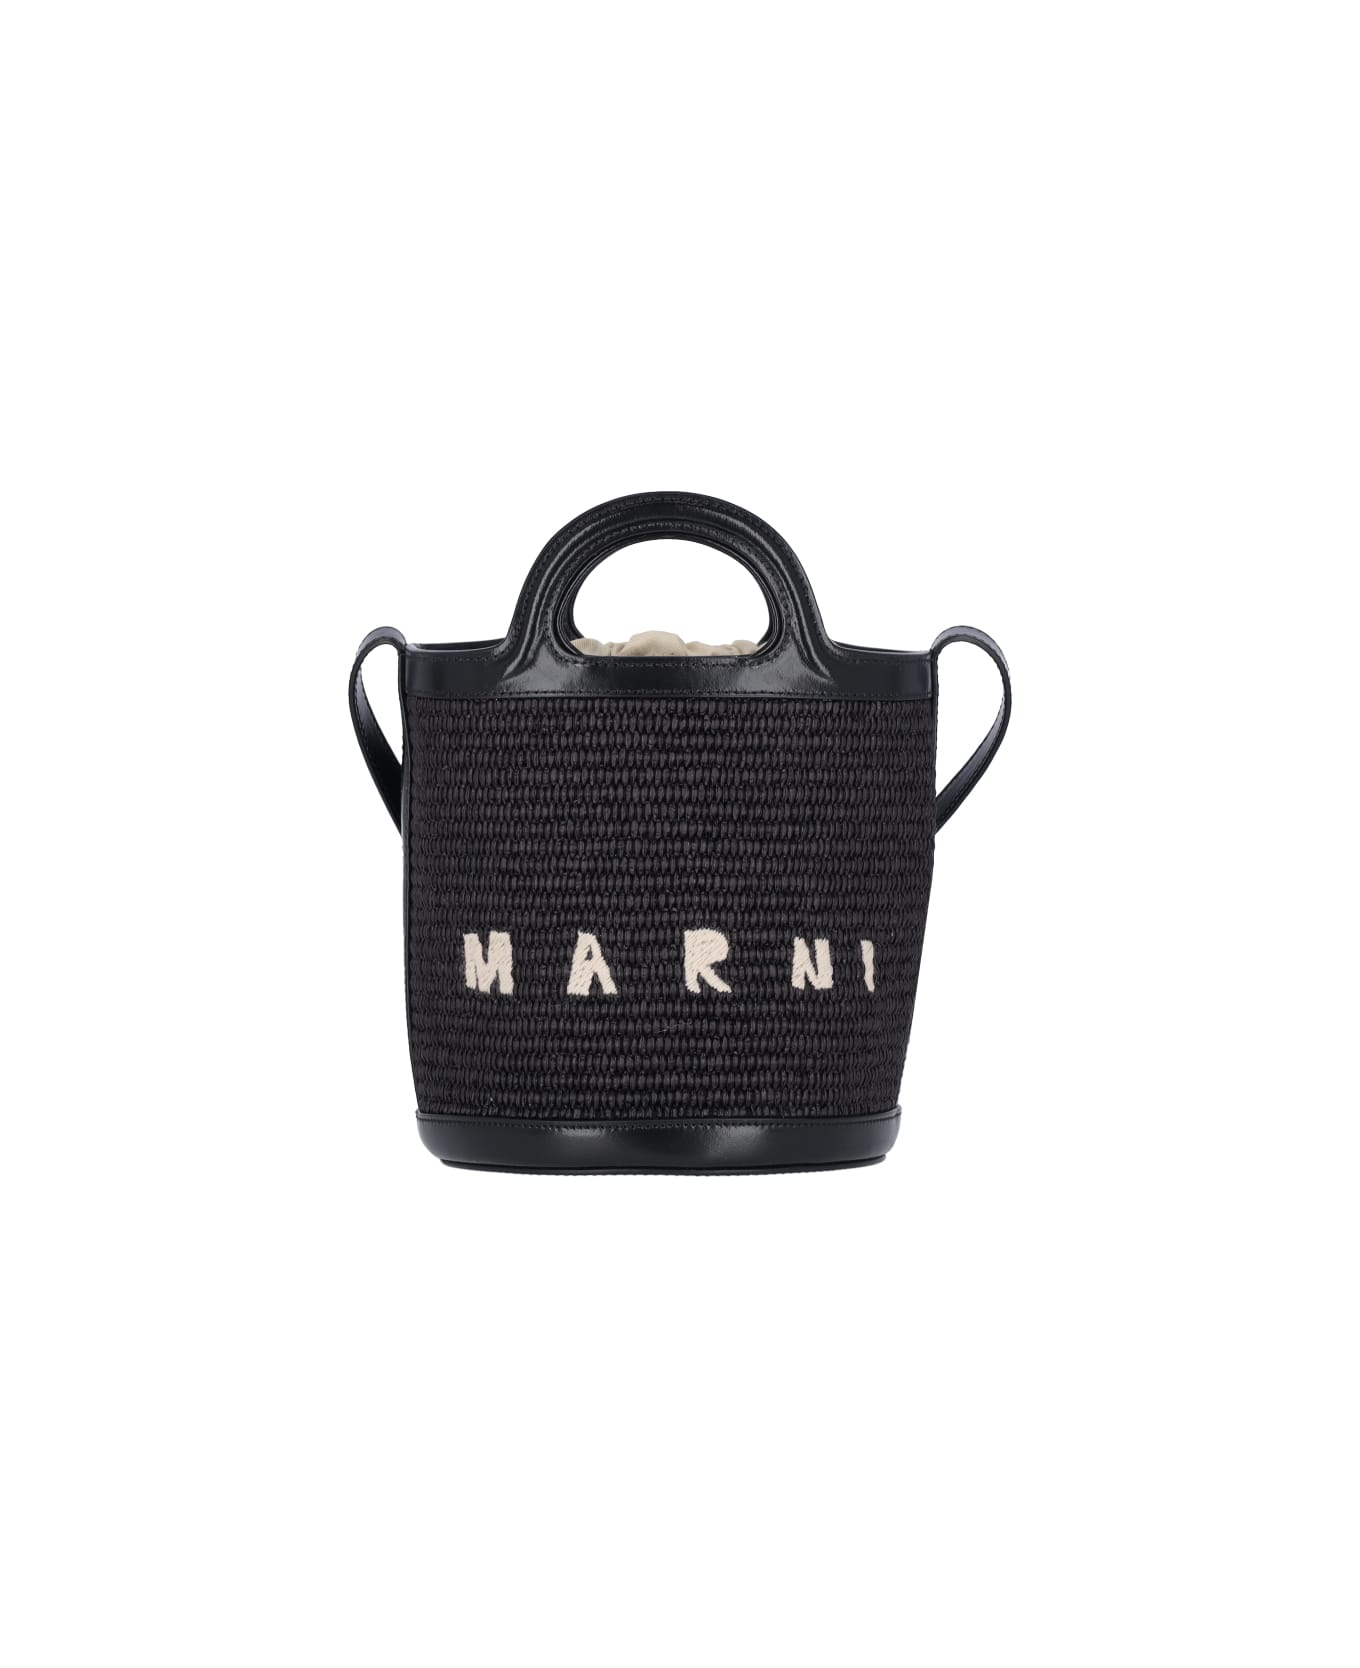 Marni Small Bucket Bag "tropicalia" - Black  